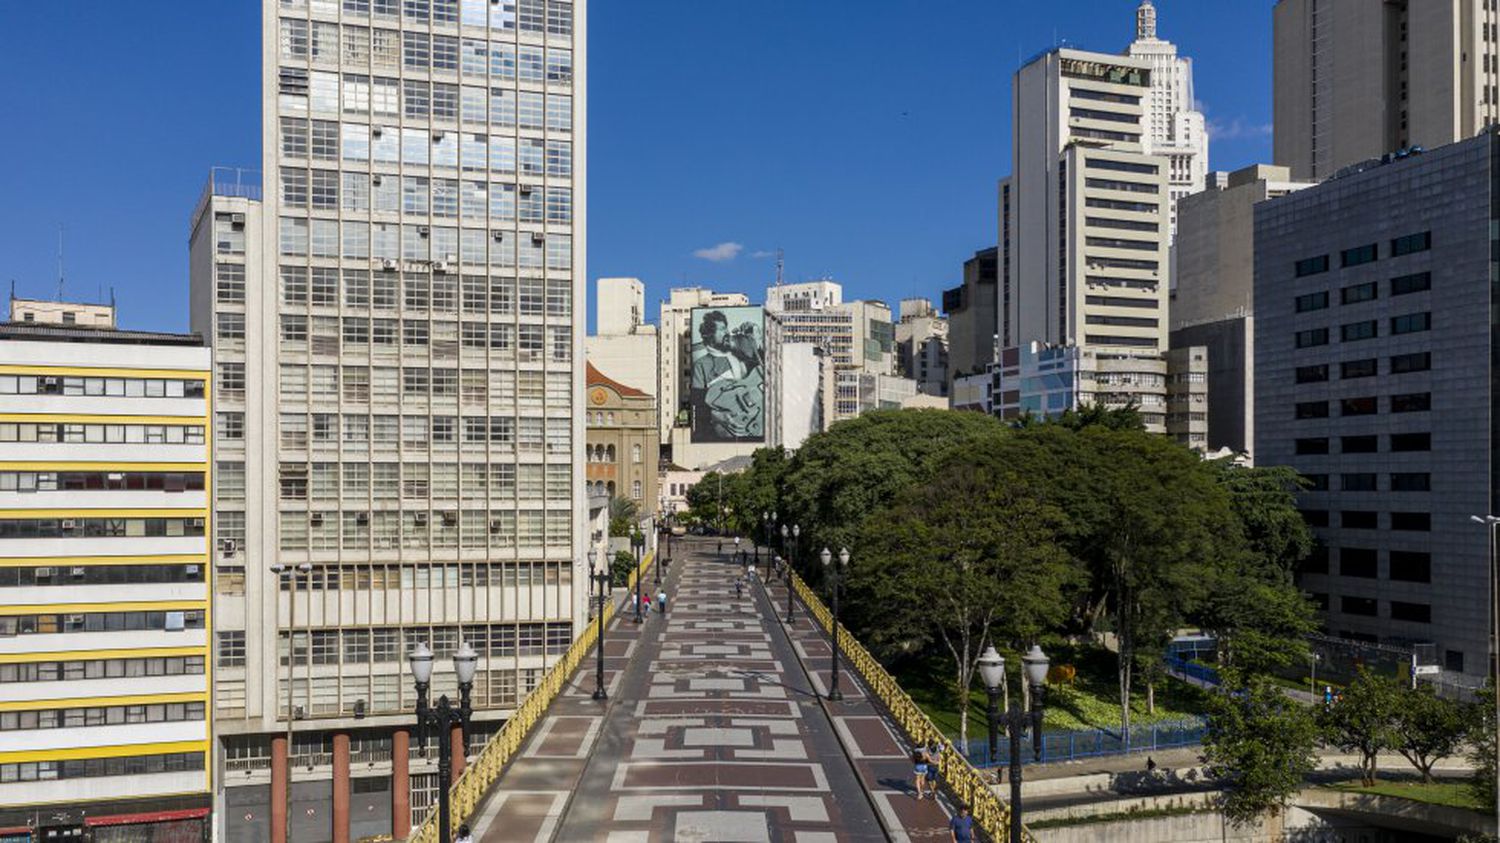 The city of São Paulo under quarantine.